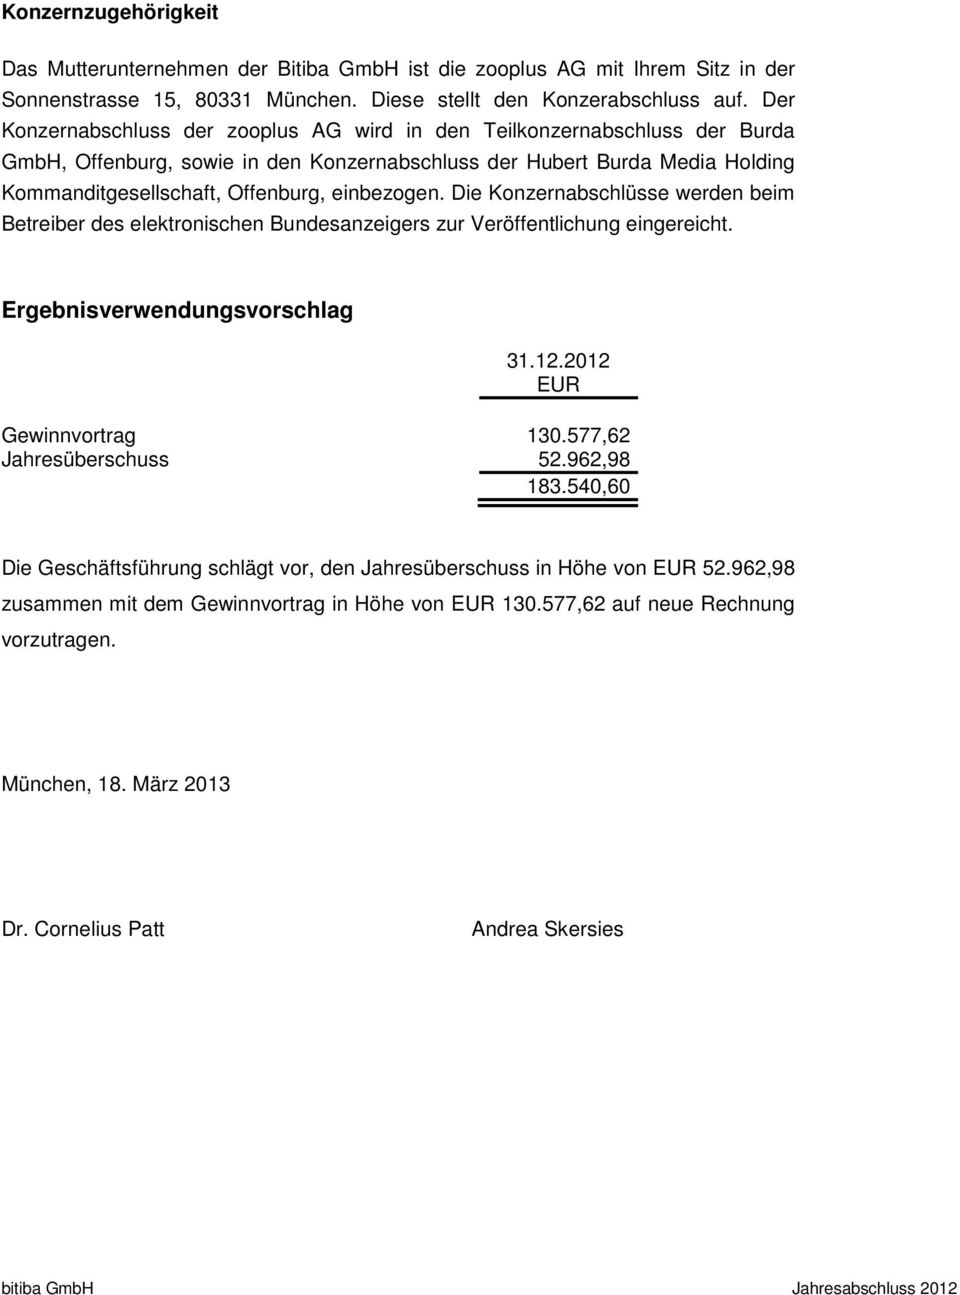 einbezogen. Die Konzernabschlüsse werden beim Betreiber des elektronischen Bundesanzeigers zur Veröffentlichung eingereicht. Ergebnisverwendungsvorschlag 31.12.2012 EUR Gewinnvortrag 130.